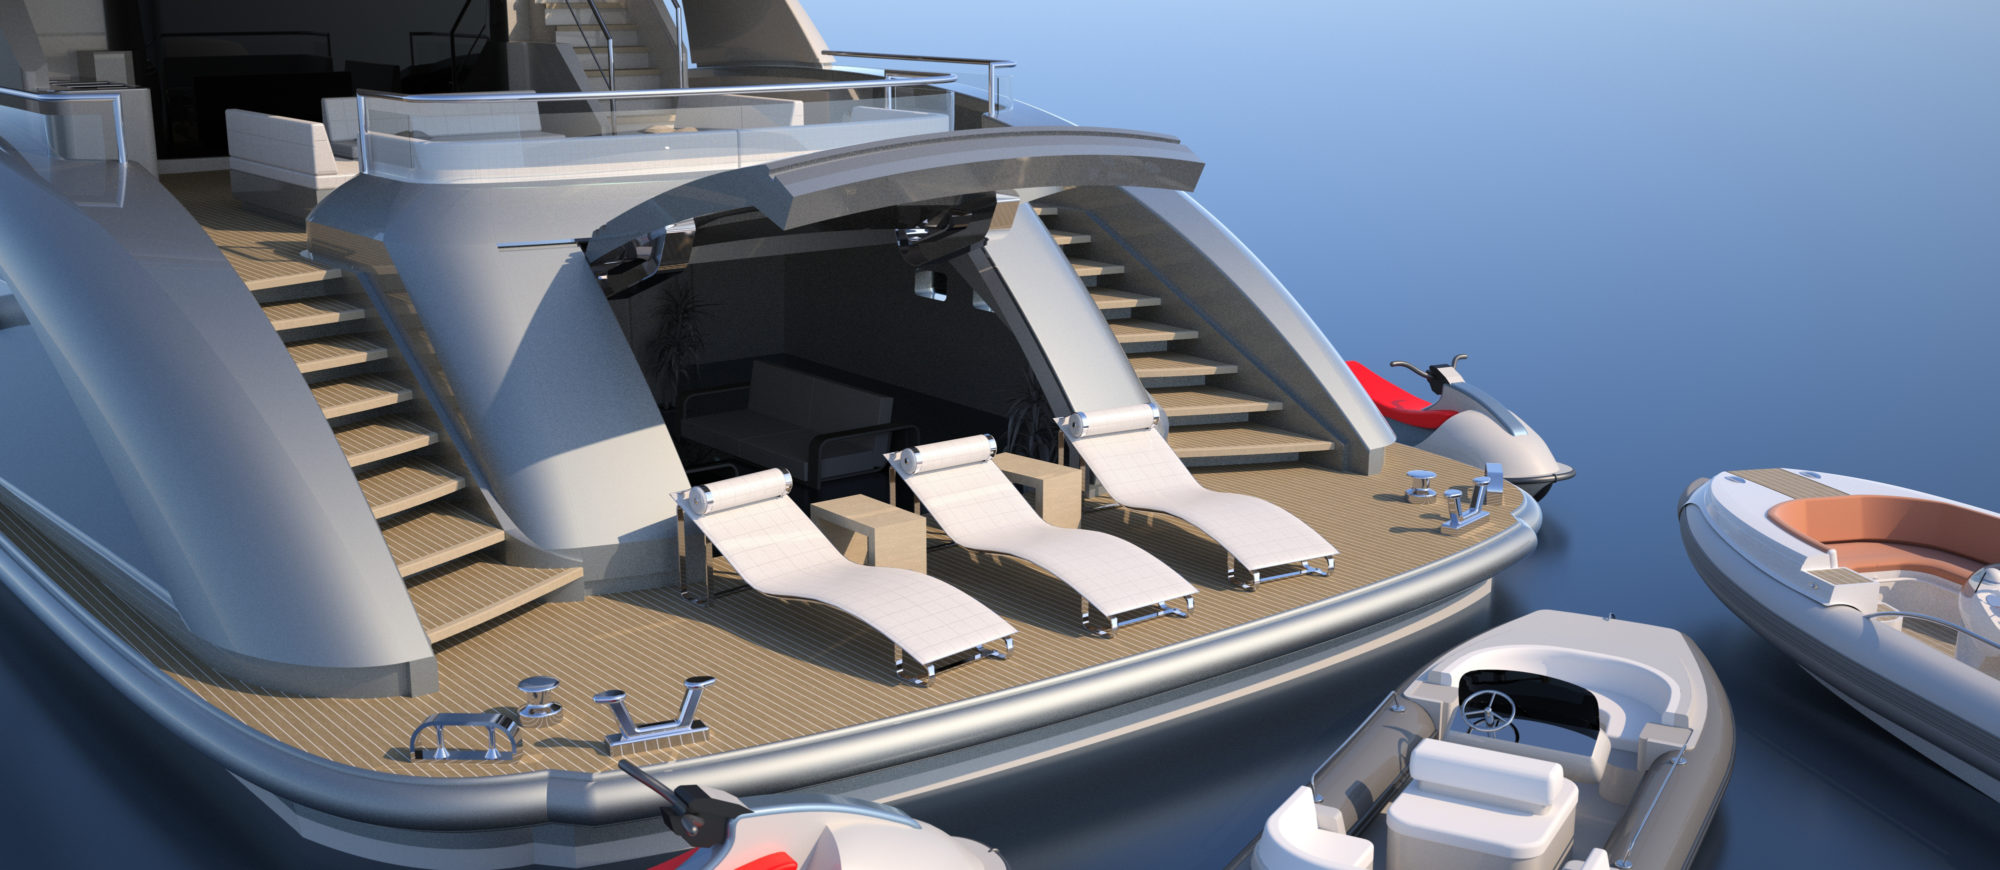 Conrad C166 Superyacht Concept Vallicelli Visualisation Aft Garage Beach Club 1